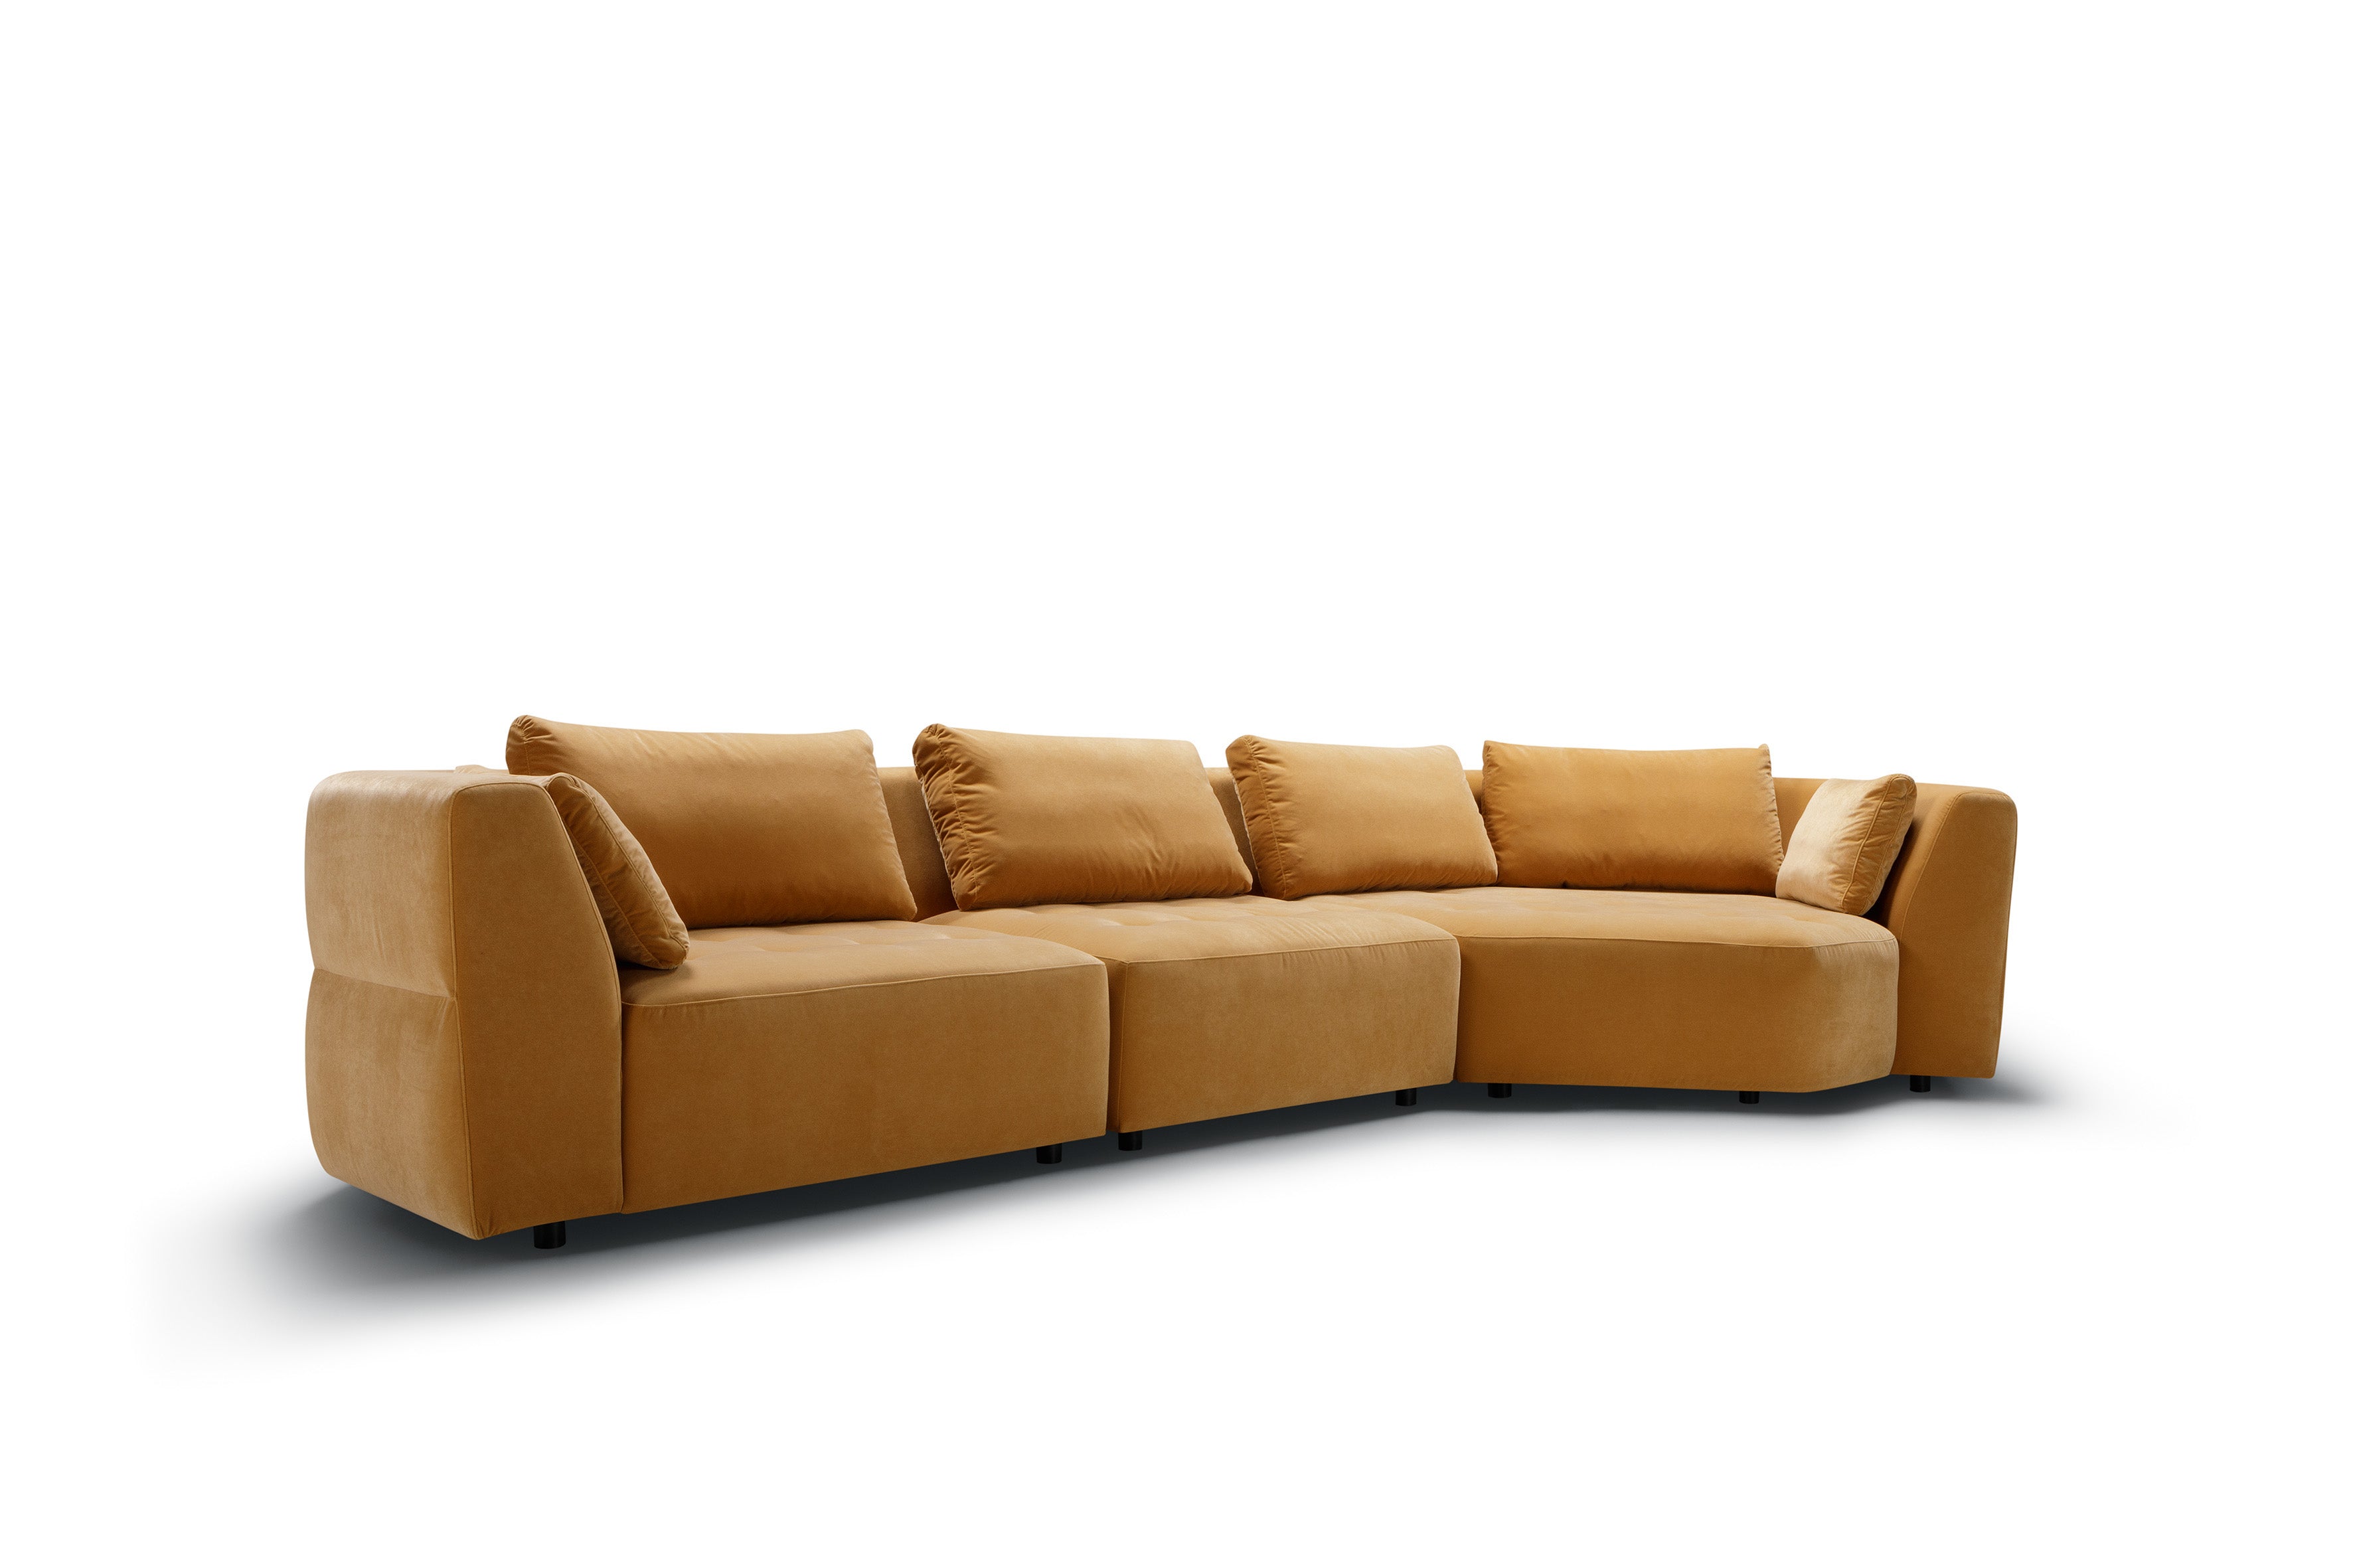 Mastrella Codi Set 2 Corner Sofa Right